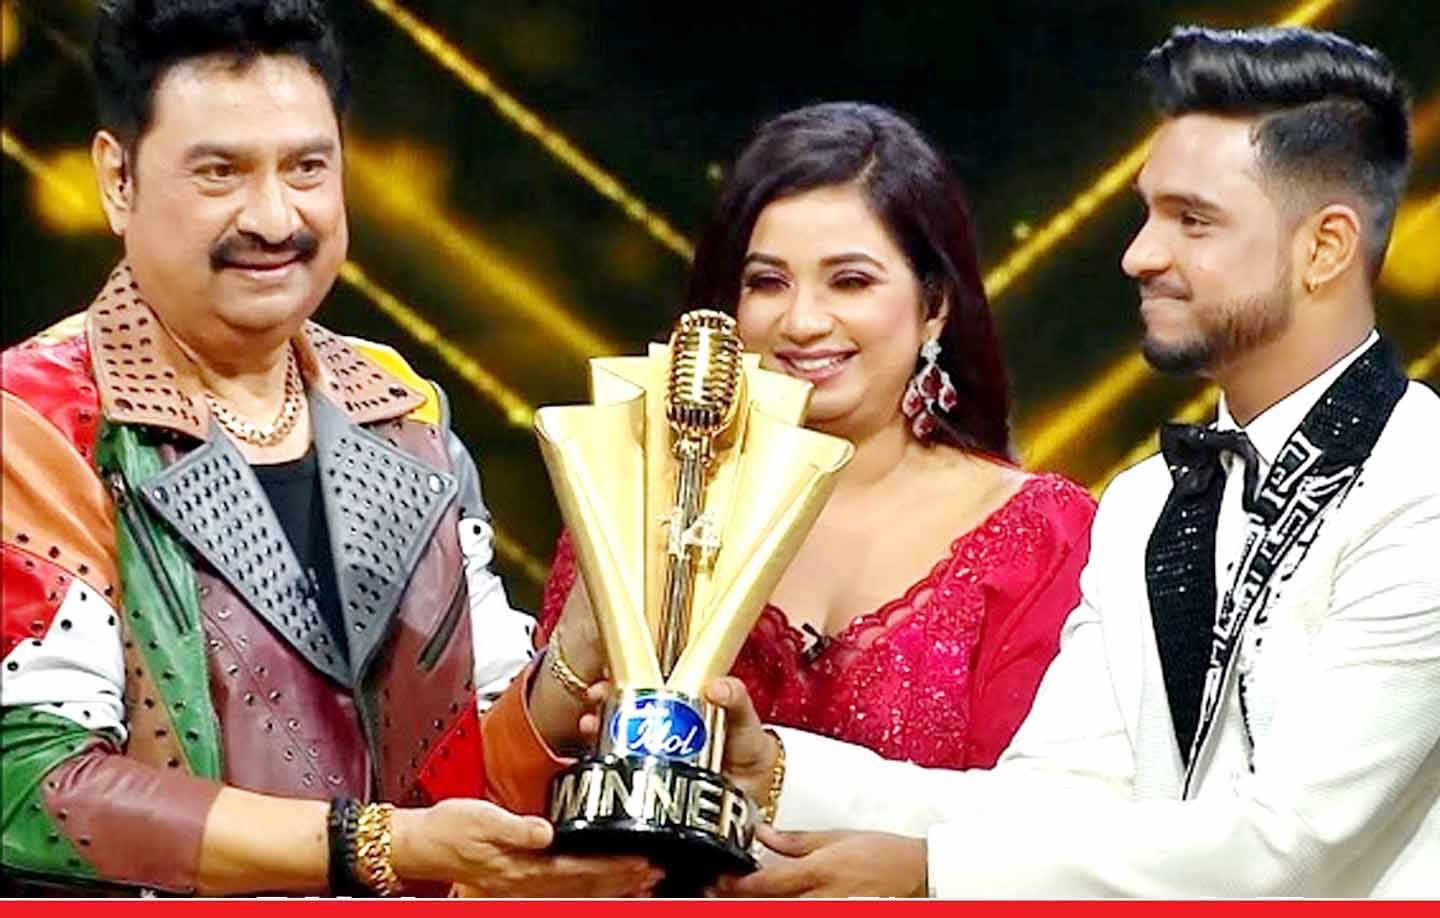 वैभव गुप्ता बने टेलीविजन के शो ‘इंडियन आइडल सीज़न 14’ के विजेता